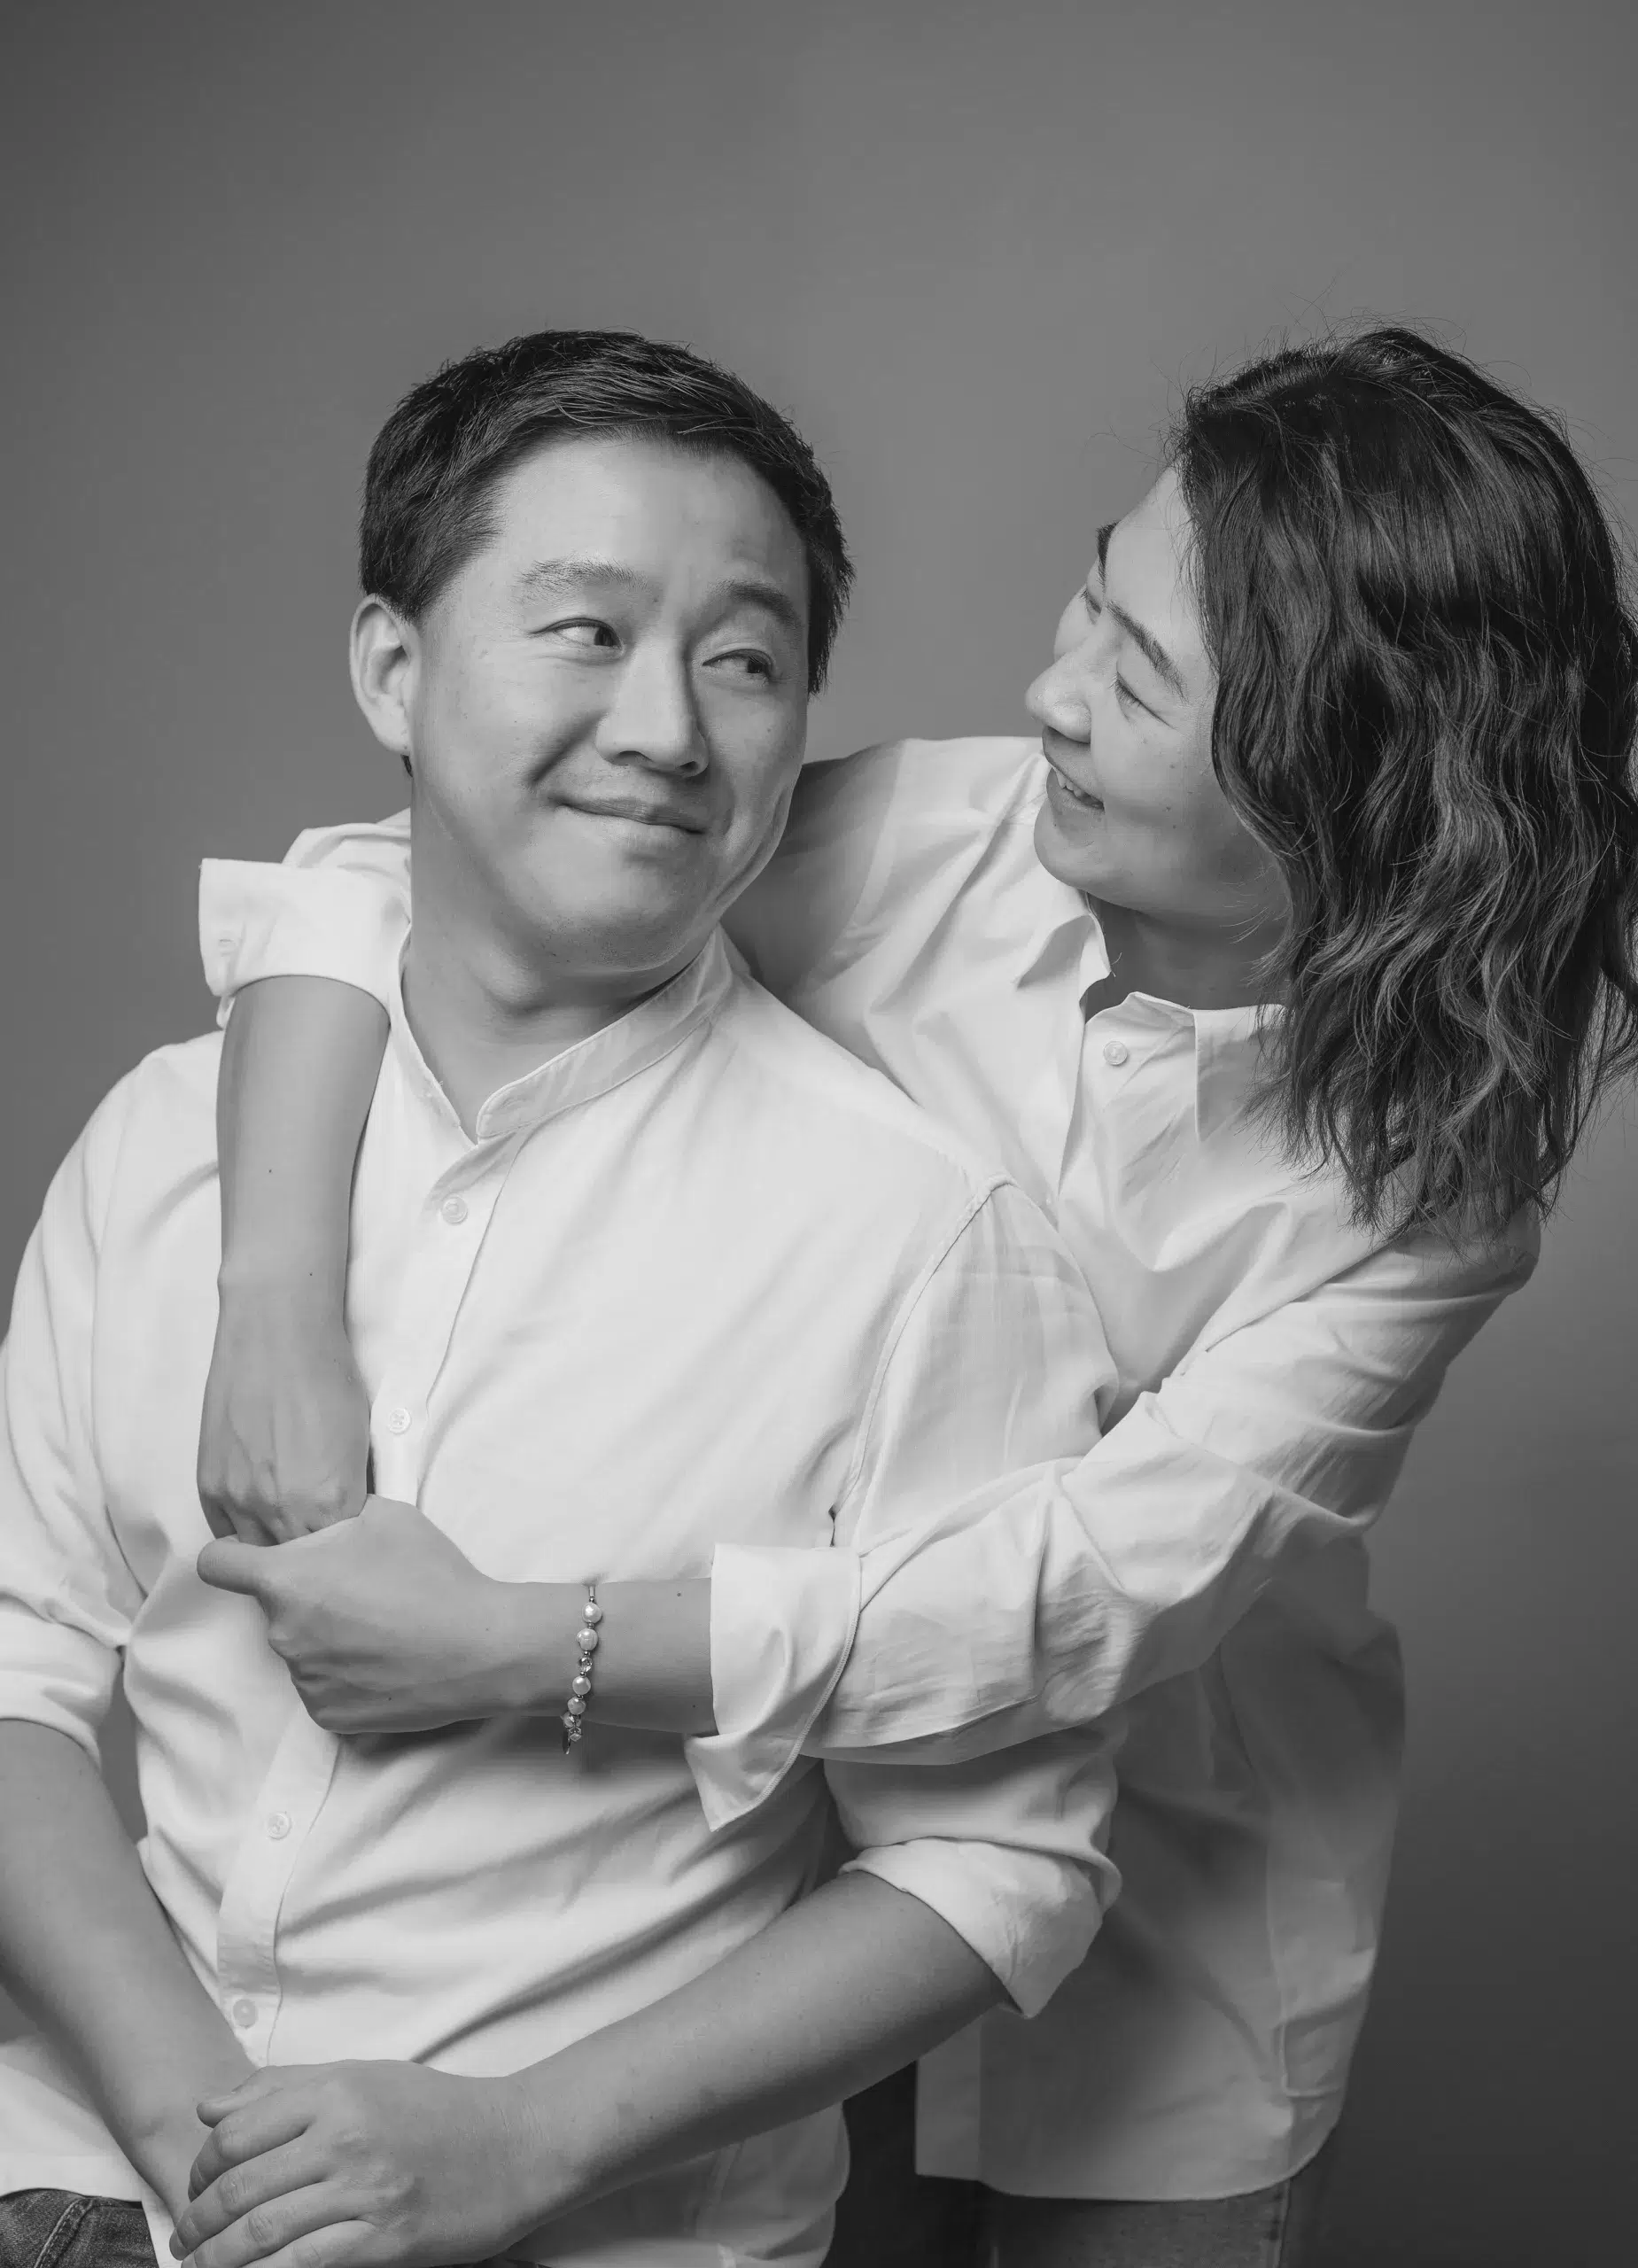 Ein schwarz-weißes Foto zeigt ein Paar, das sich umarmt. Die beiden Personen stehen eng beieinander und wirken glücklich und vertraut miteinander. Die Umarmung strahlt Wärme und Zuneigung aus.